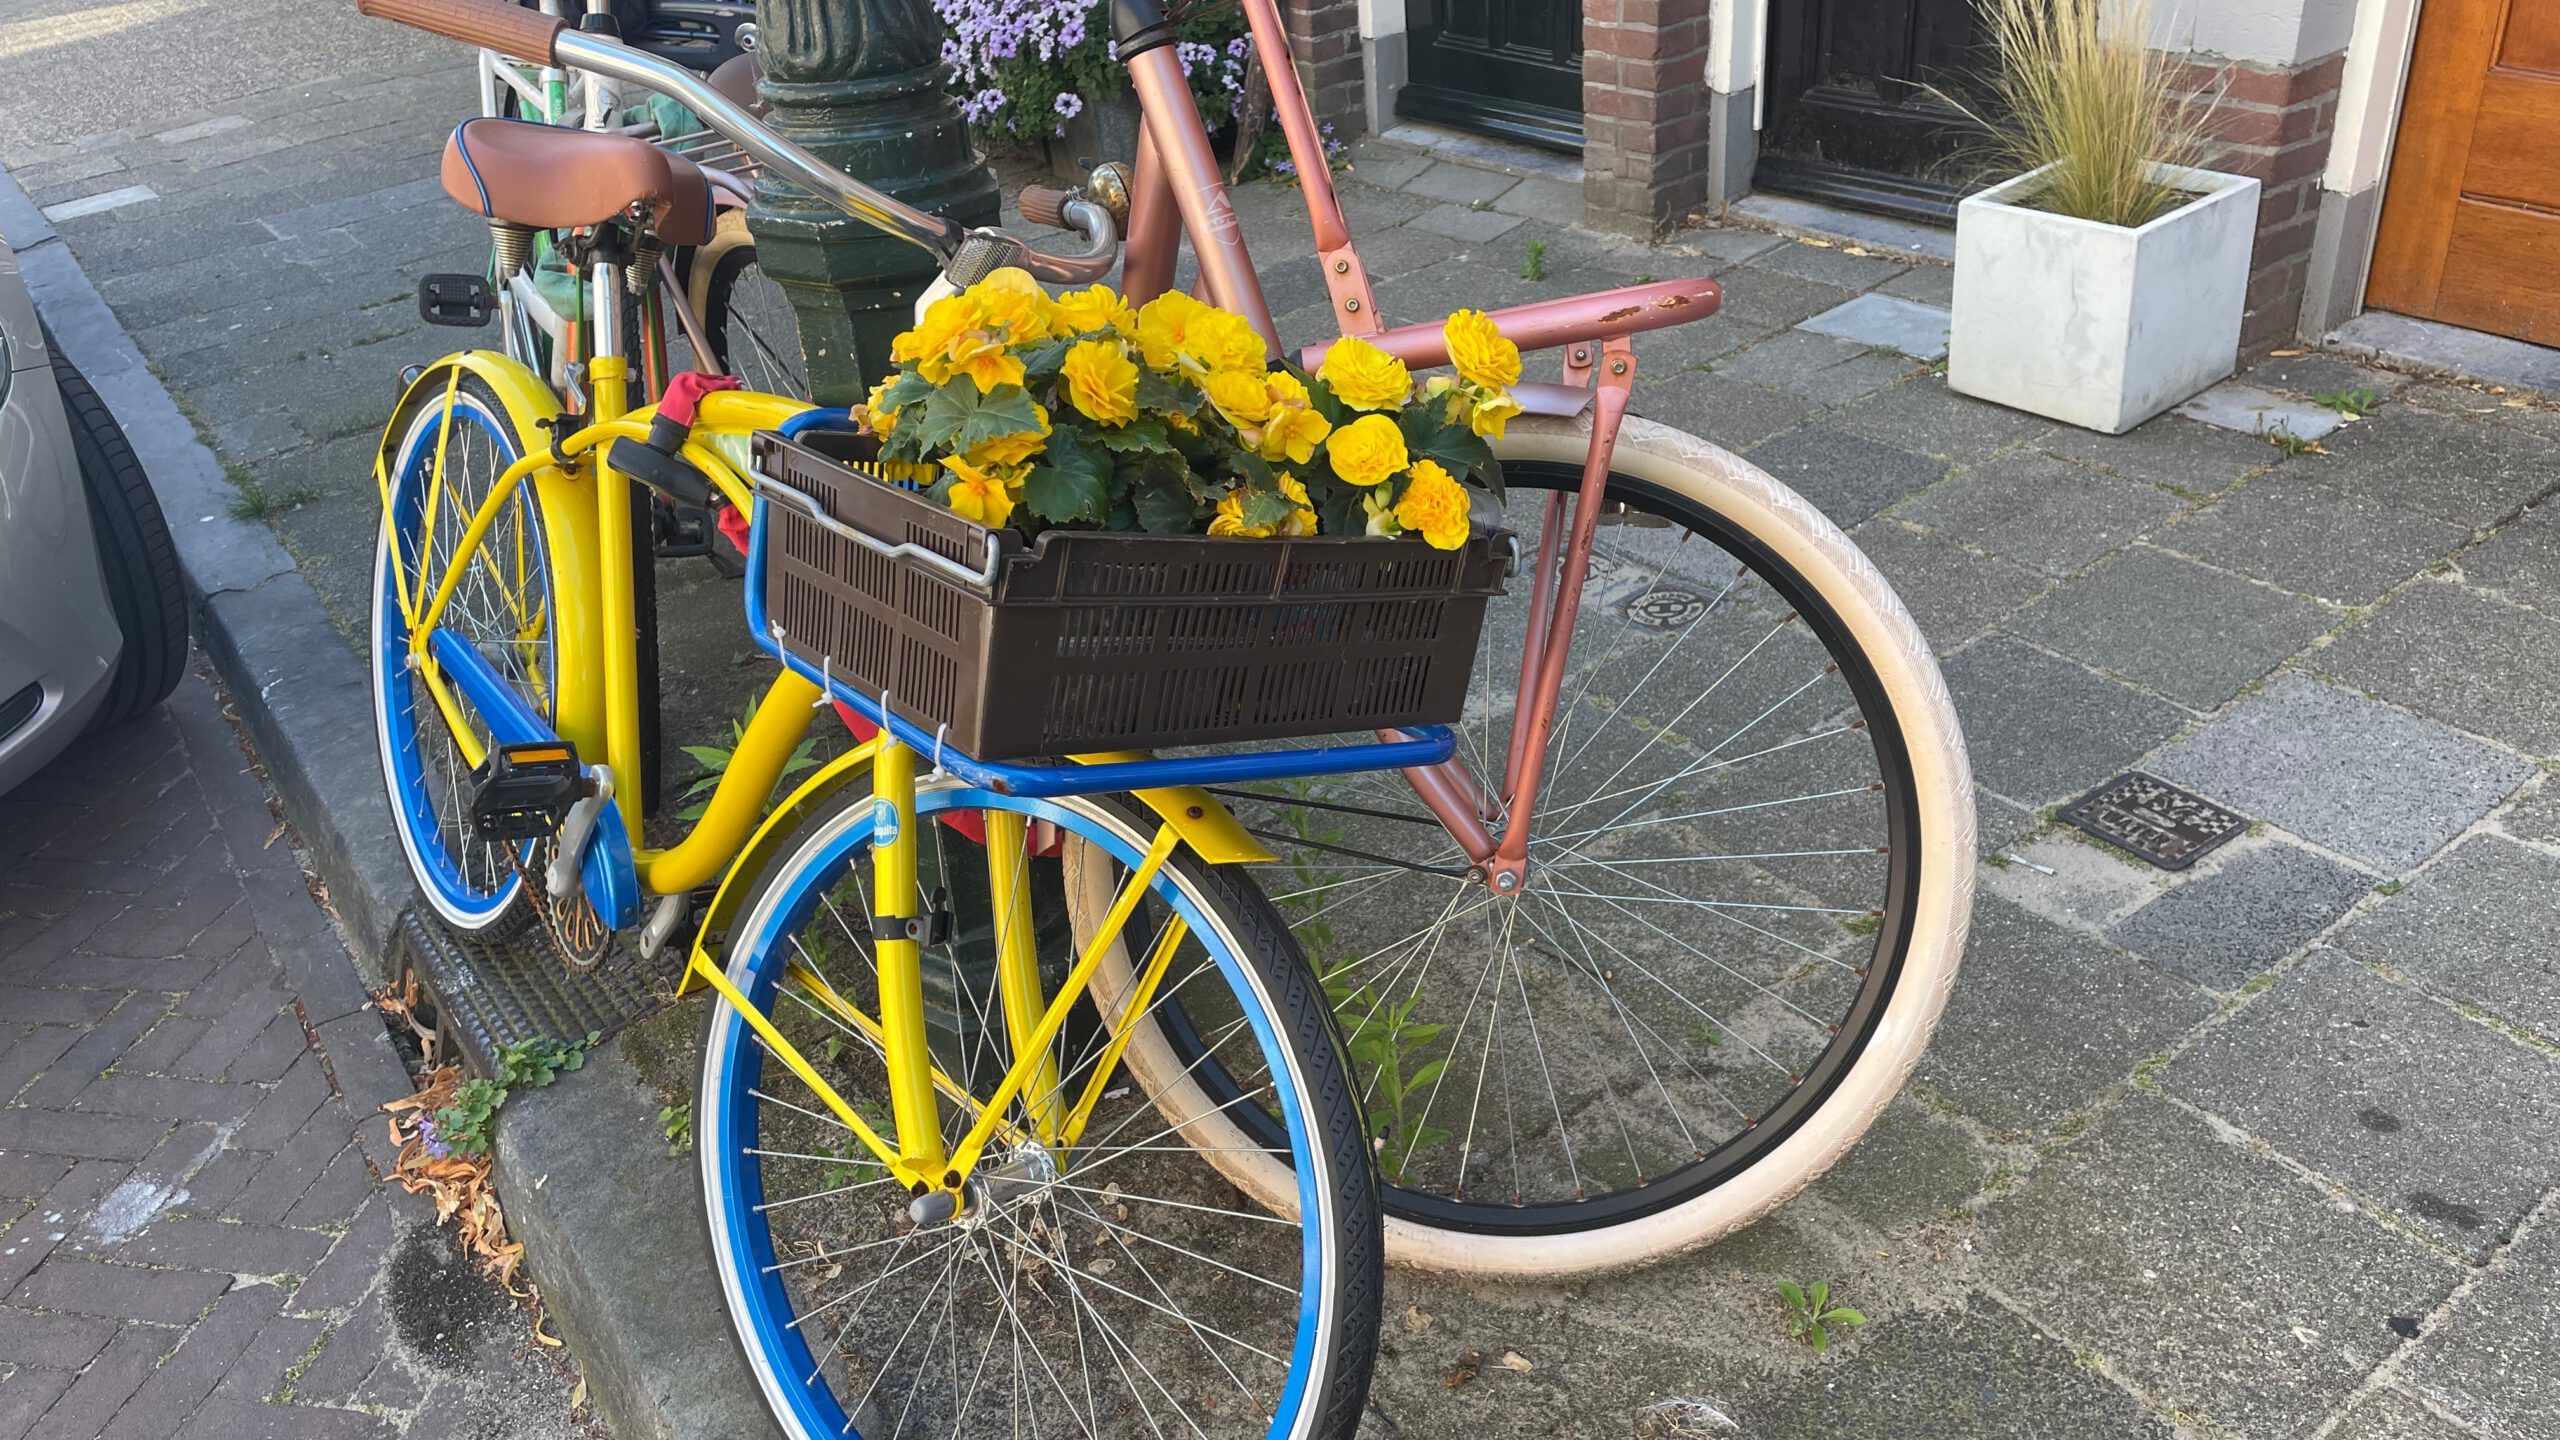 Zwei Fahrräder die an eine Laterne anlehnen sind abgebildet. Eins ist gelb und hat gelbe Blumen im Korb.